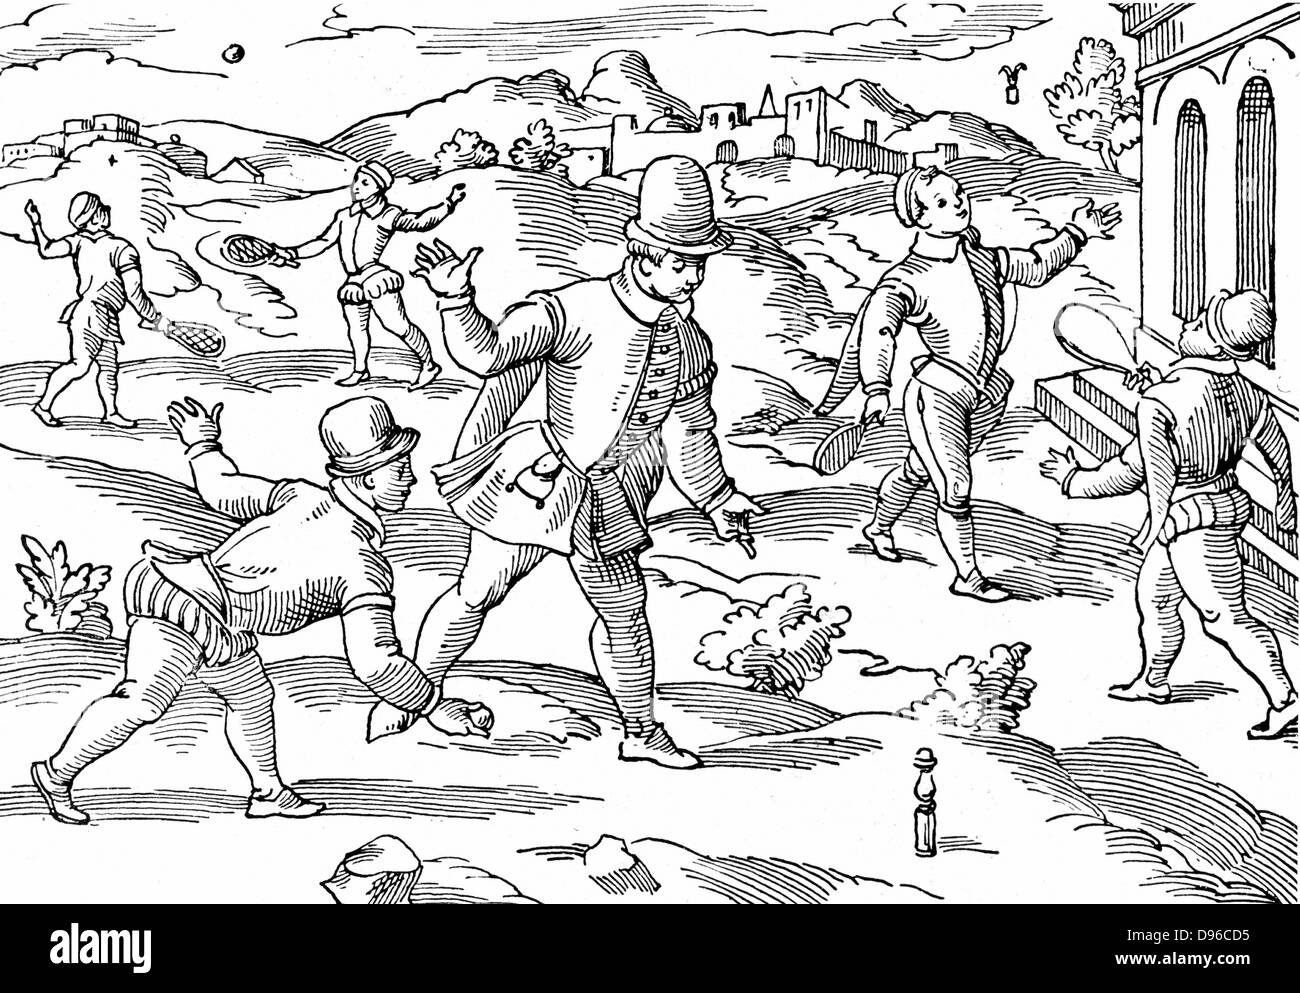 Kinder Spiele im 16. Jahrhundert: Im Vordergrund jungen Spielen eine Form von Kegeln, rechts Federball, links Hintergrund spielen am Ball mit Schläger bespannt. Holzschnitt. Stockfoto